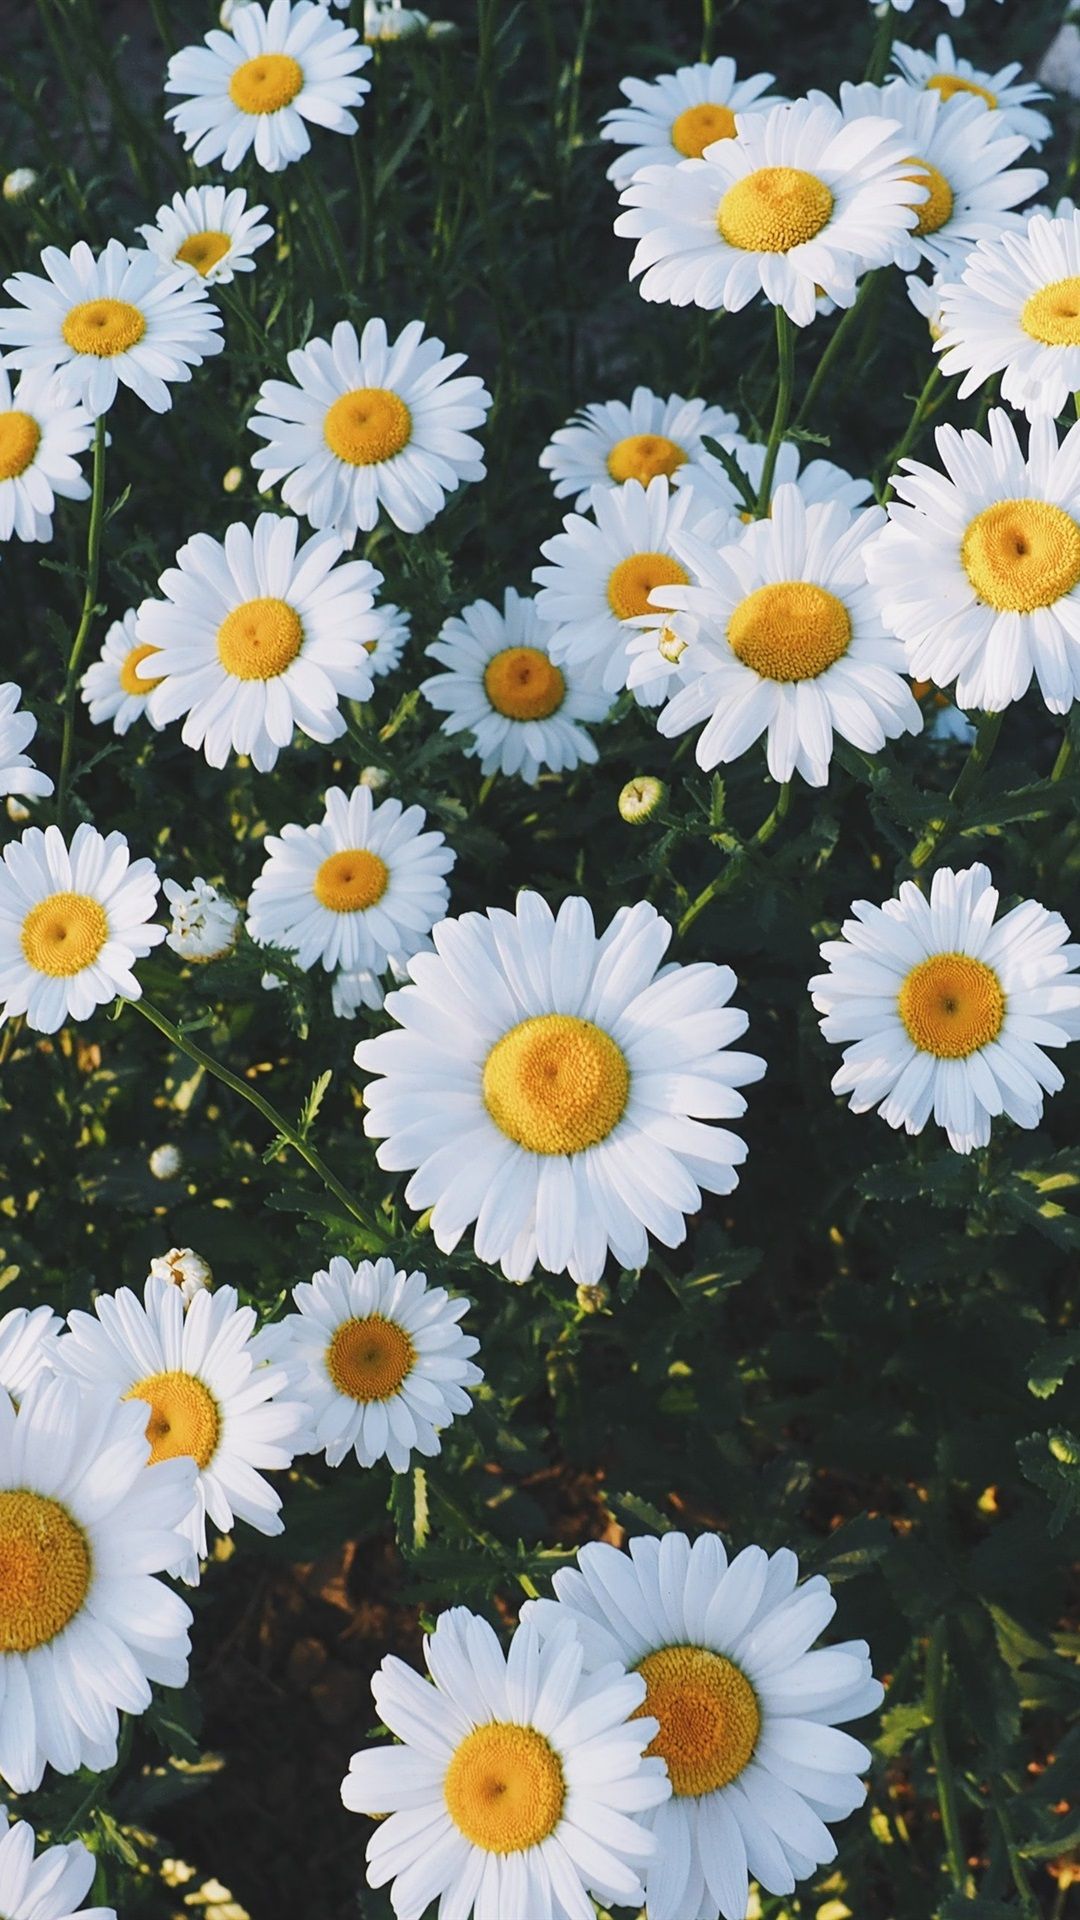  Blumen Hintergrundbild 1080x1920. Schöne Weiße Gänseblümchen Blumen 1080x1920 IPhone 8 7 6 6S Plus Hintergrundbilder, HD, Bild